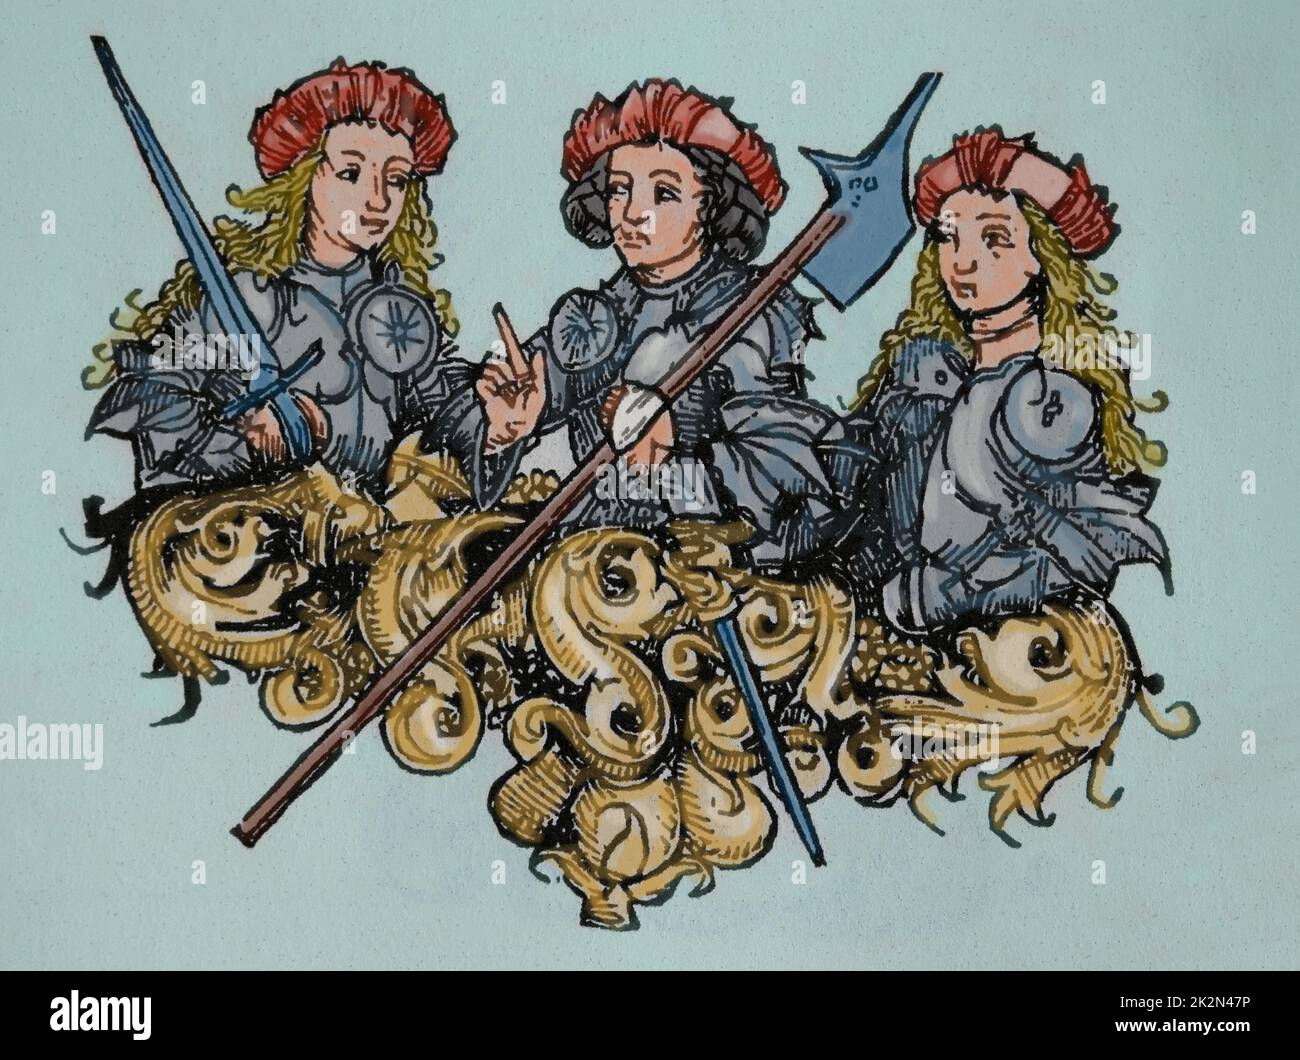 Amazonas. Grupo de mujeres guerreros. Grabado. Grabado. El Cronicle de Nuremberg', siglo 15th. Foto de stock